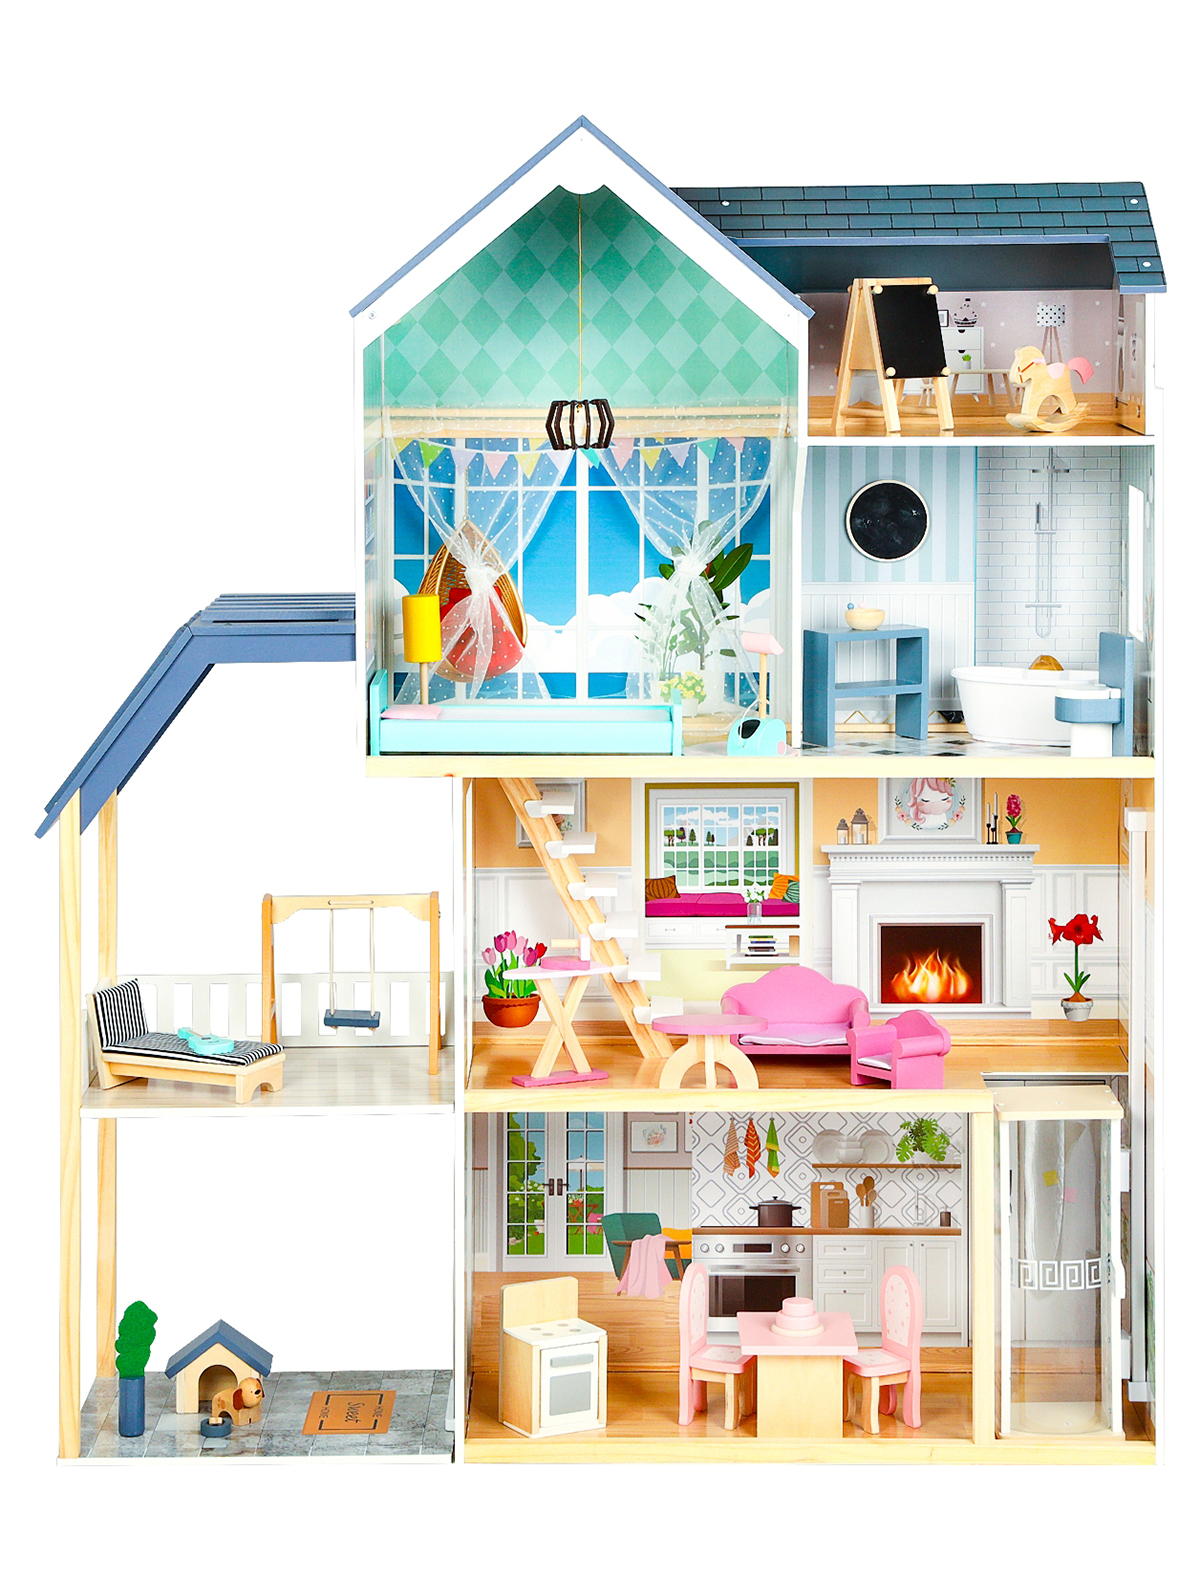 Кукольный дом PAREMO sharktoys кукольный домик конструктор для девочек